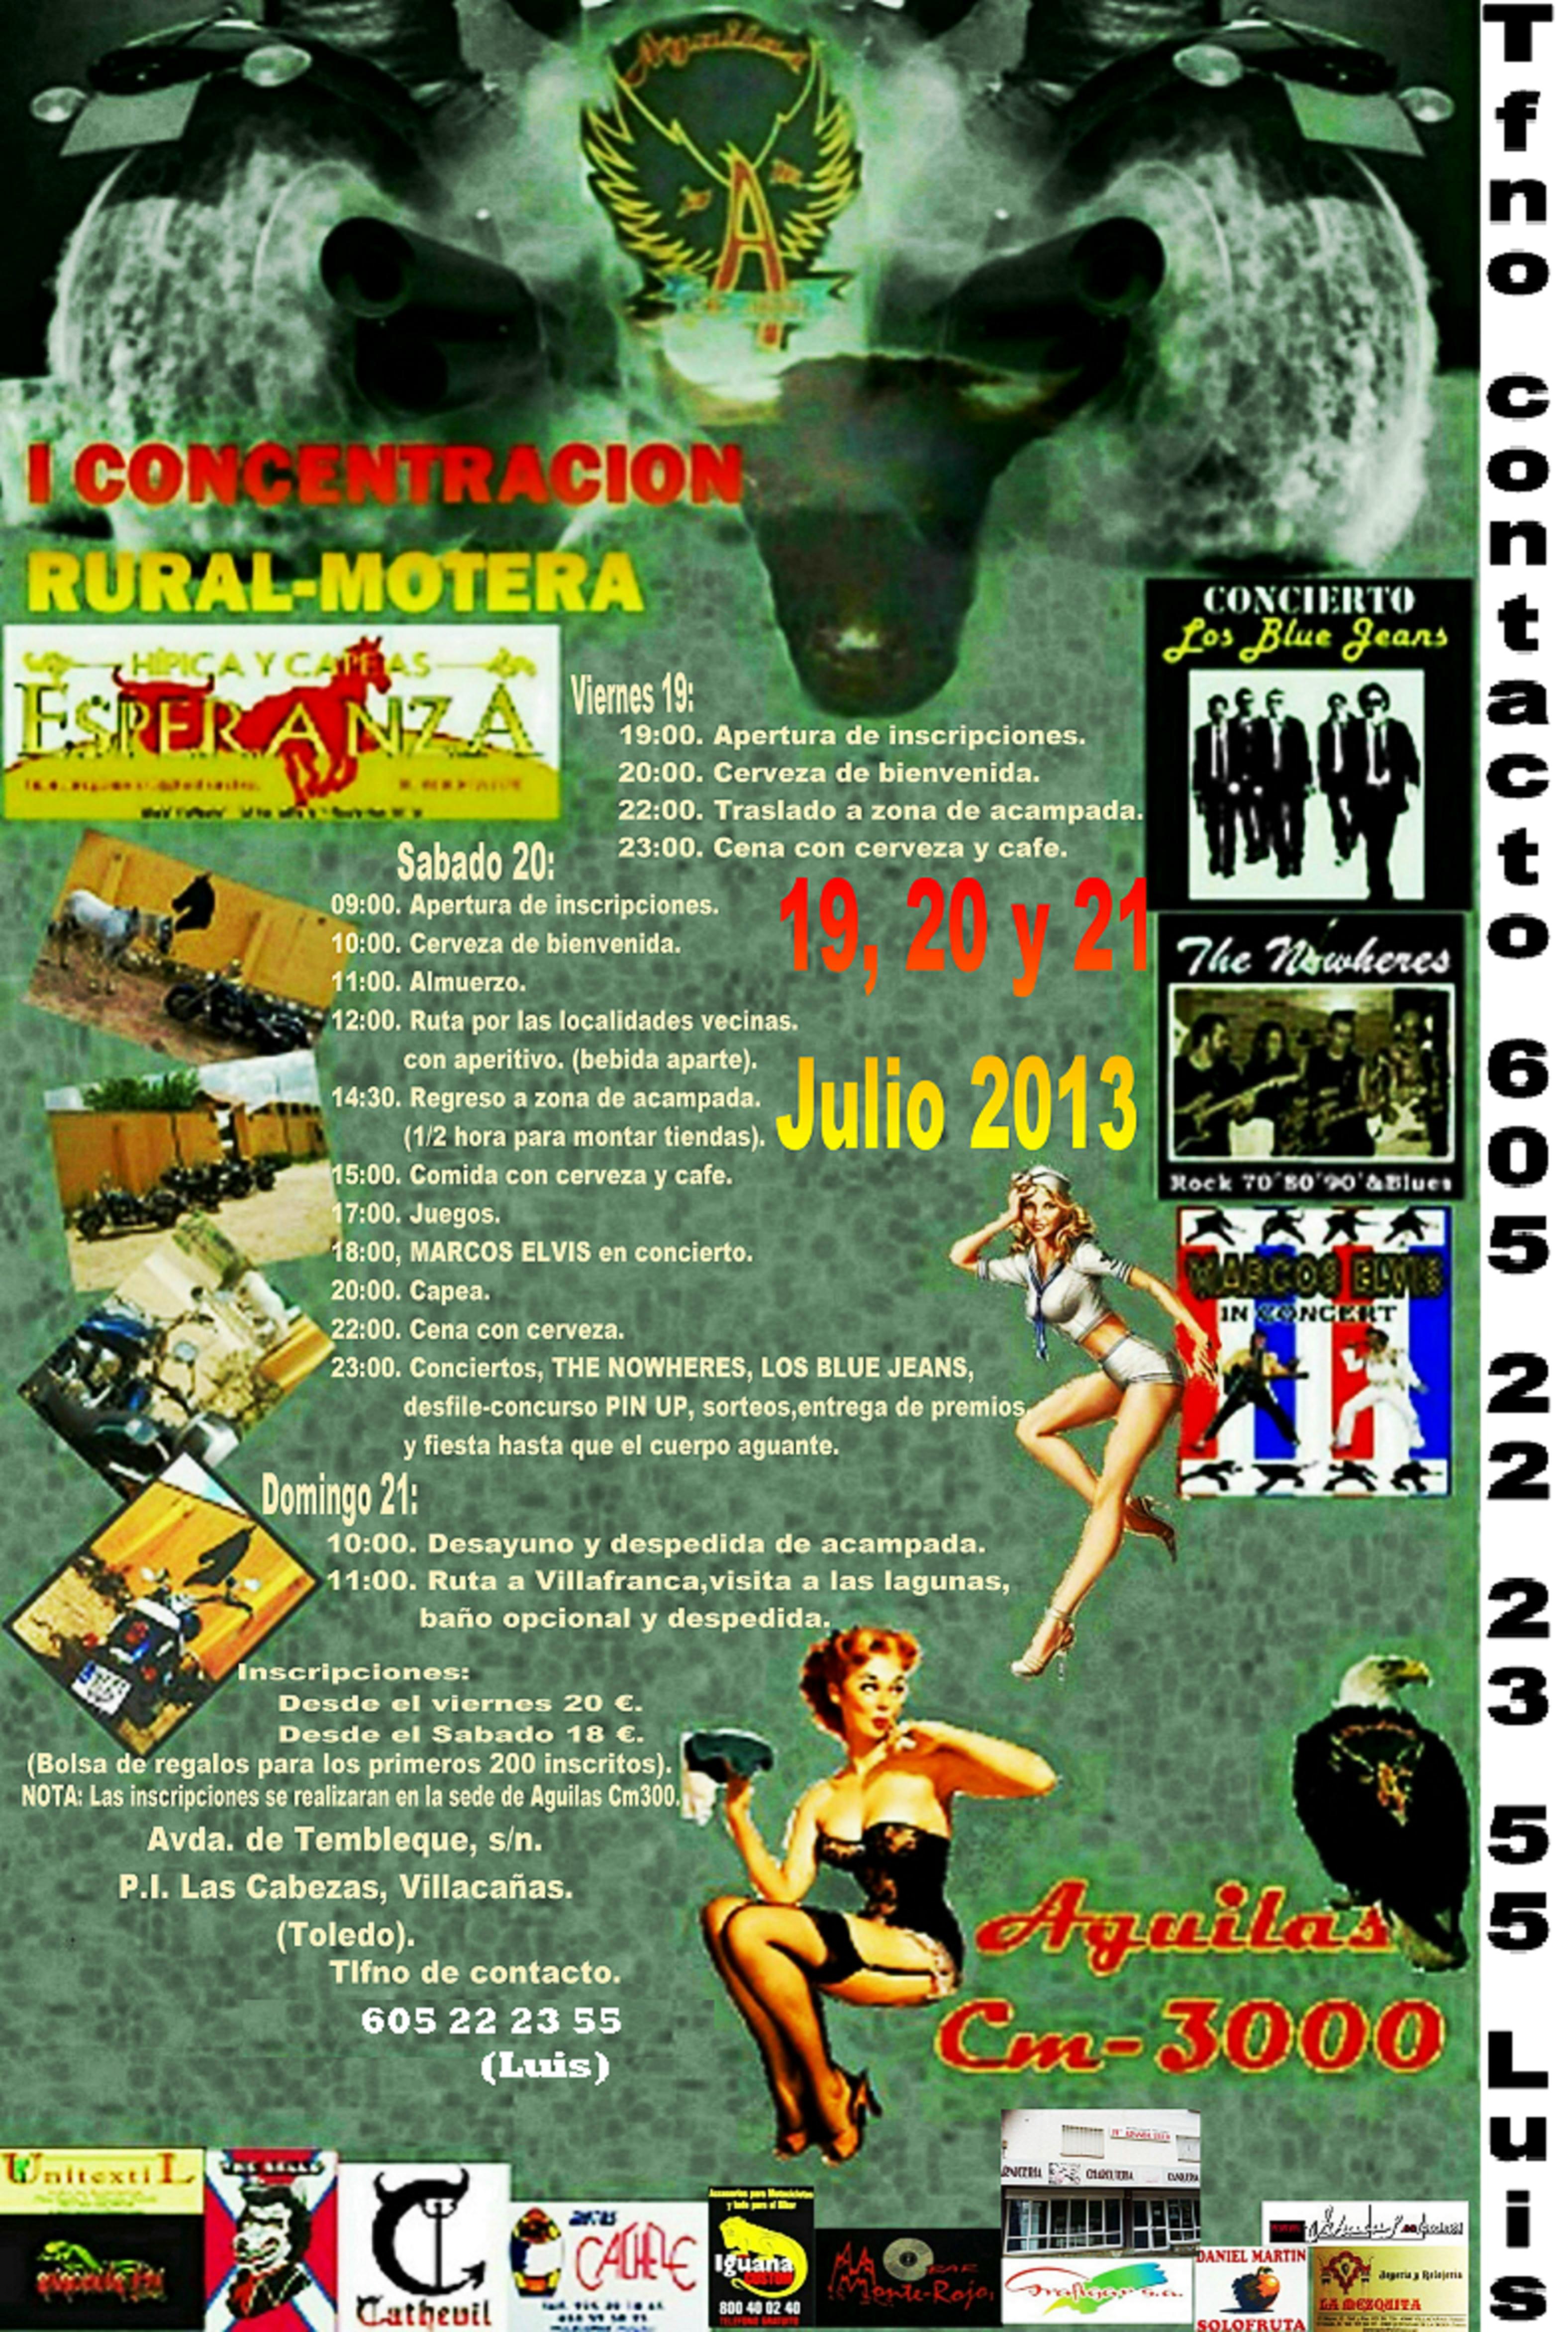 I CONCENTRACION RURAL-MOTERA DE AGUILAS CM-3000